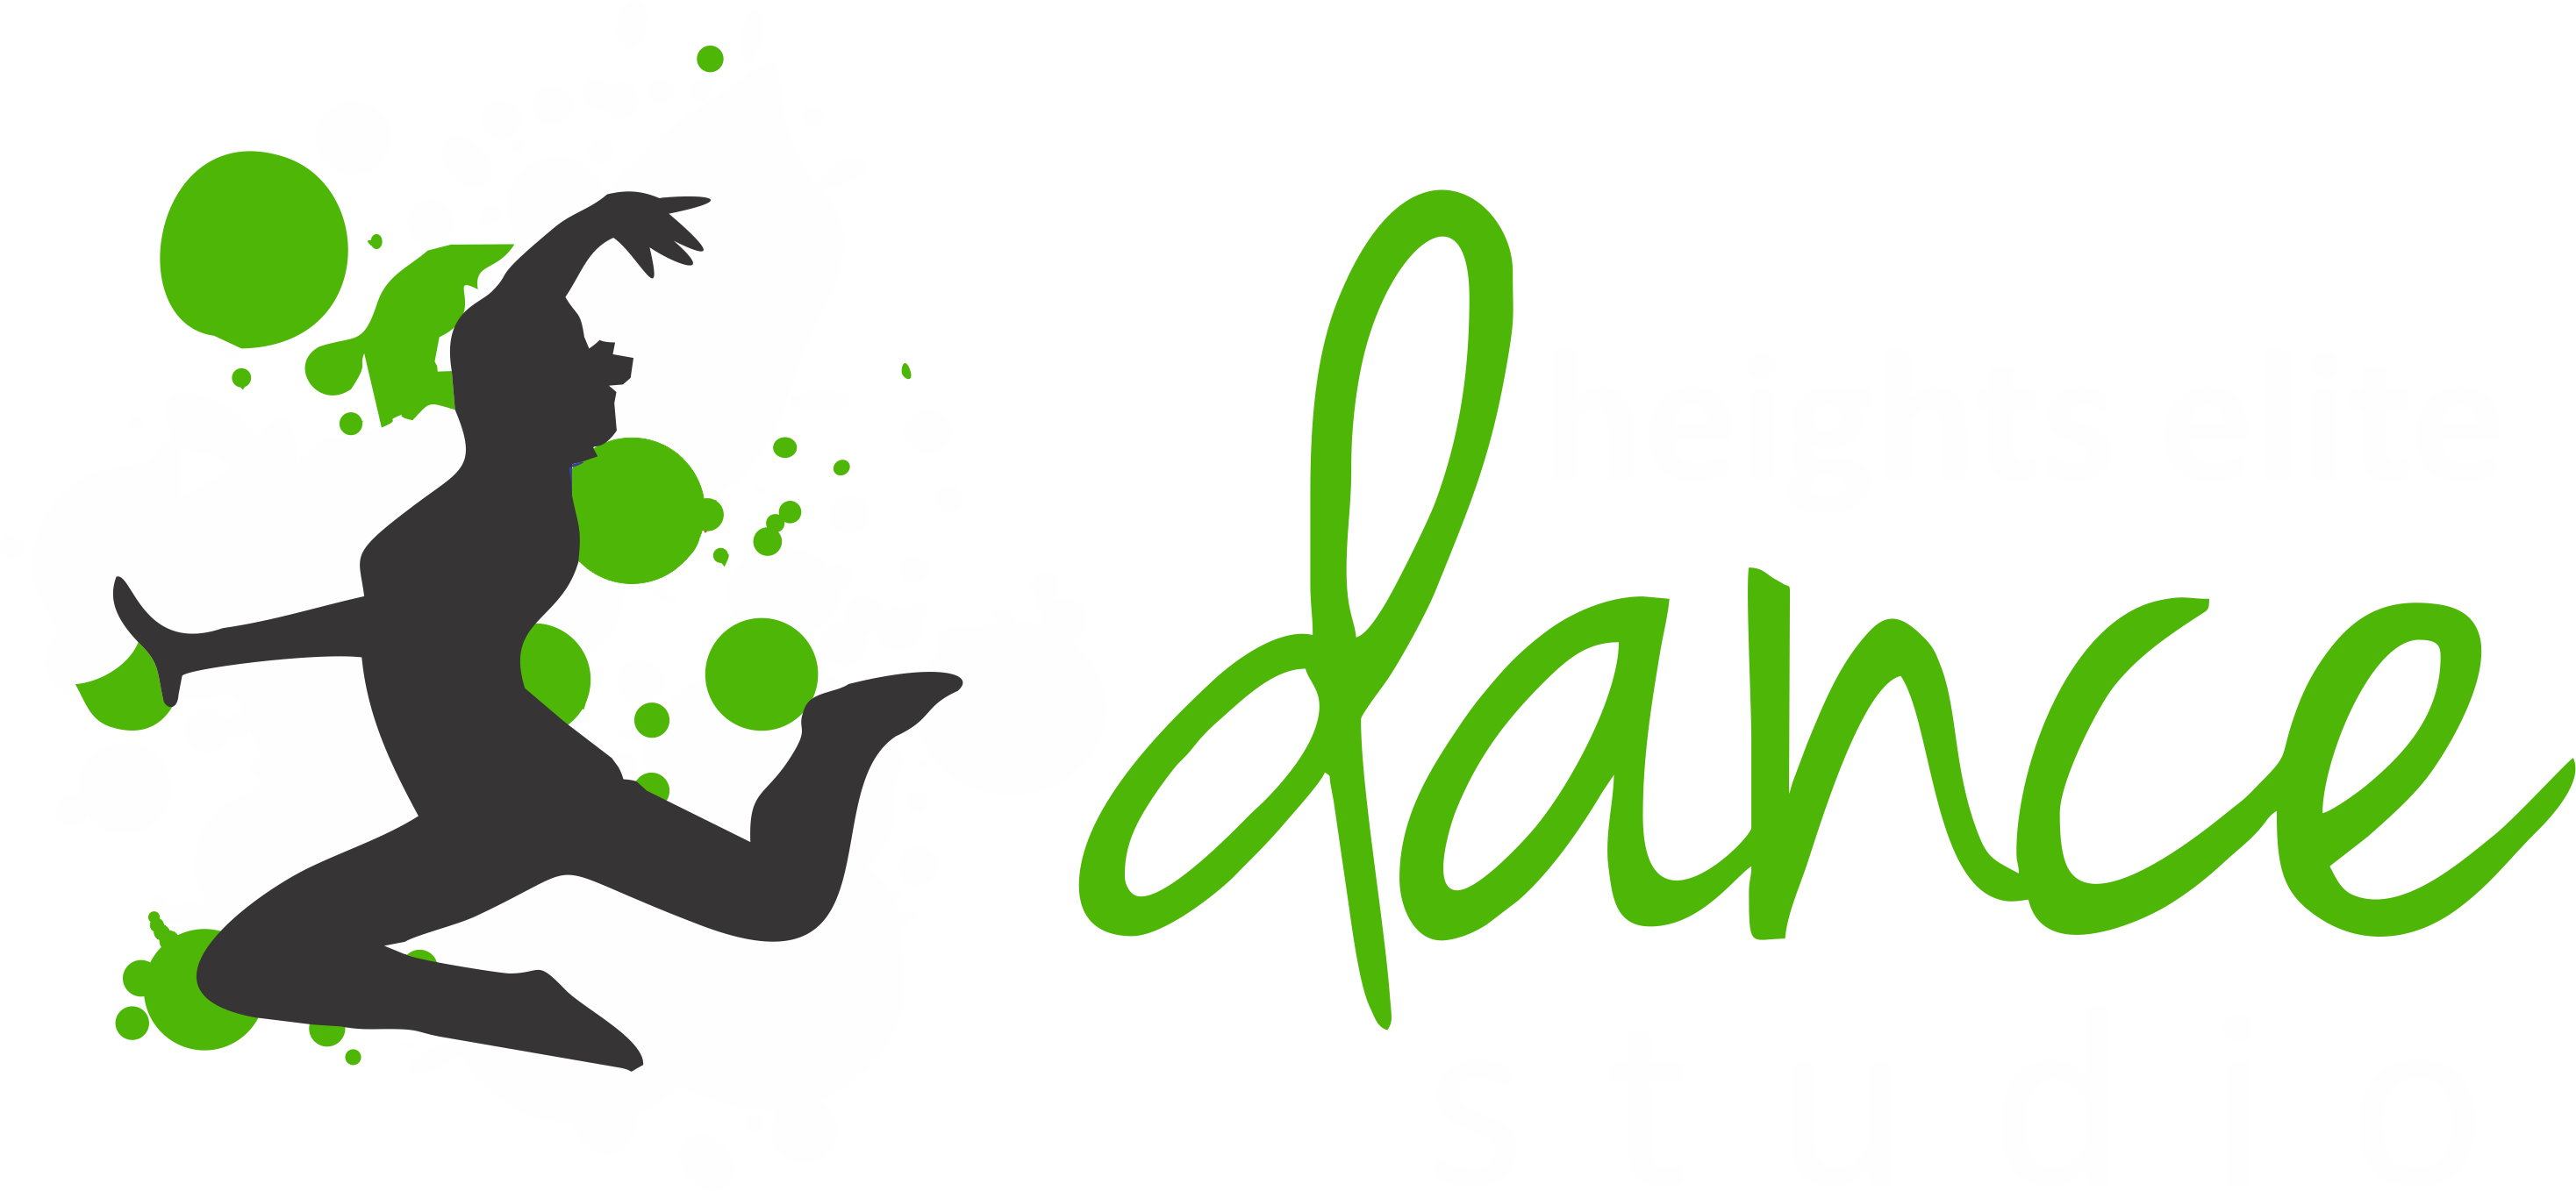 2016 Dvds - Dance Studio (2936x1358)